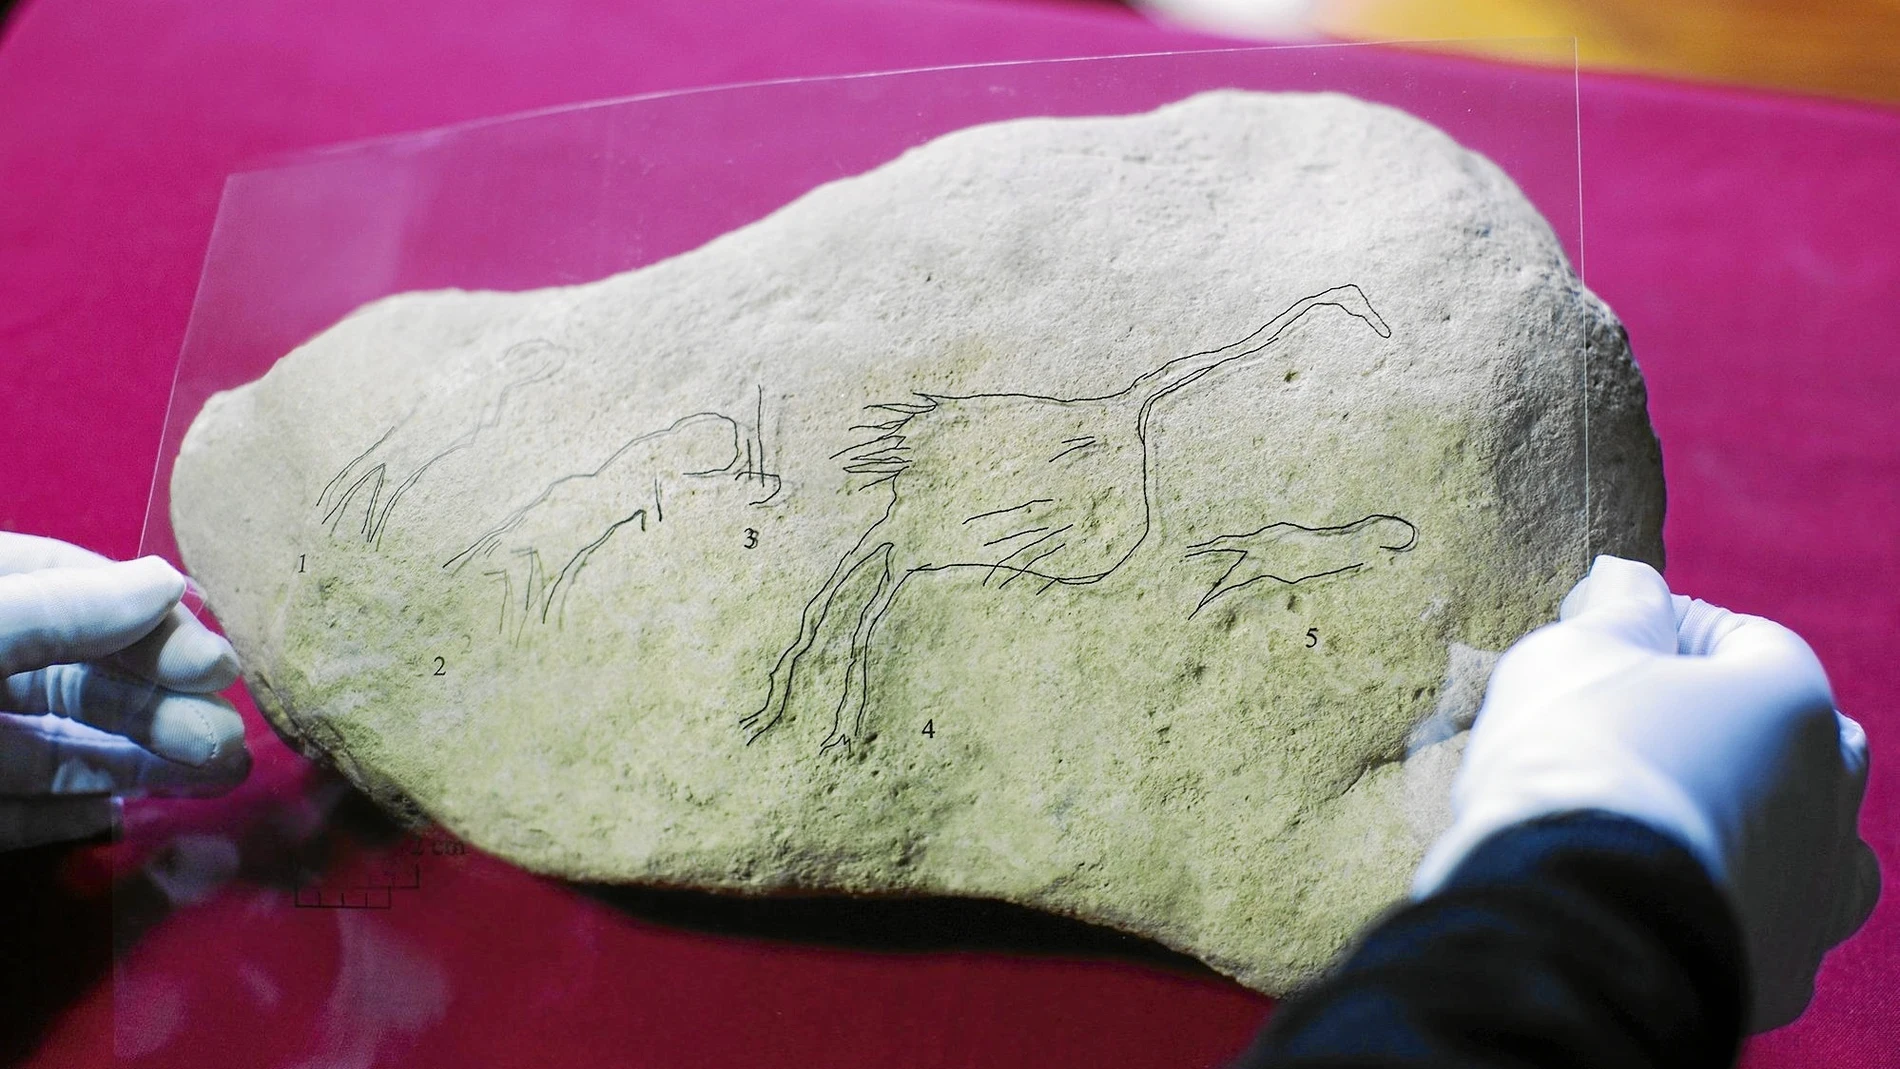 Grabación en piedra caliza de una escena de dos figuras humanas que siguen a dos grullas / Universidad de Barcelona